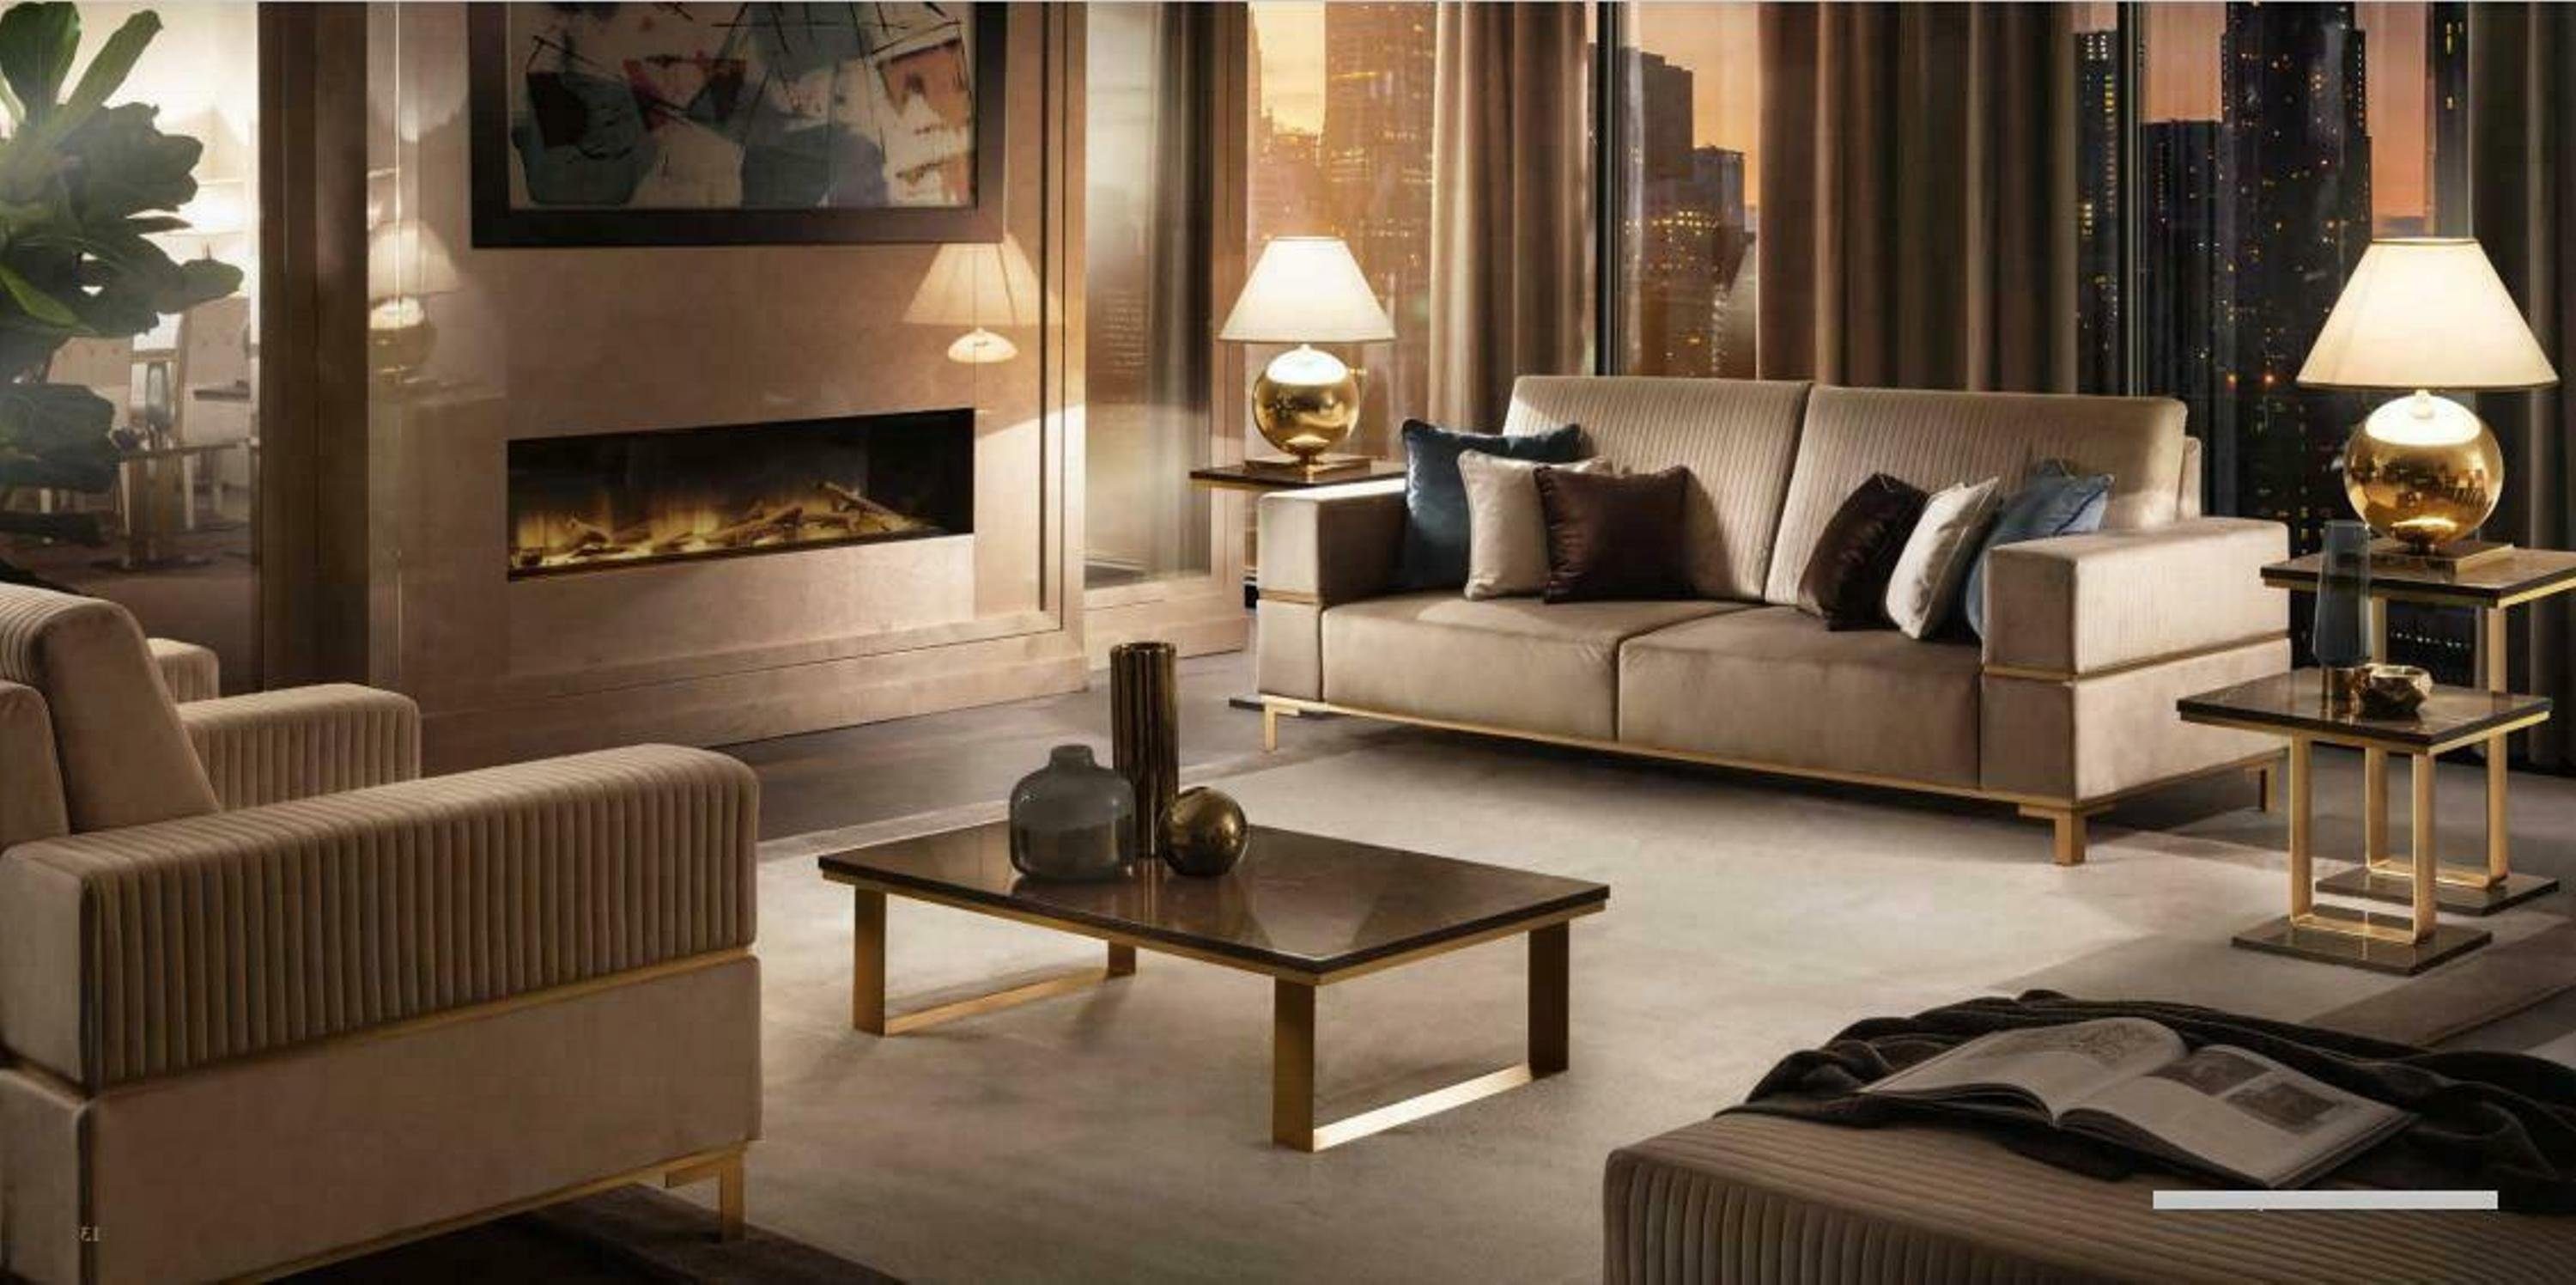 JVmoebel Sofa, Design Klassische Sofa Couch Sofas Polster 3 Sitzer